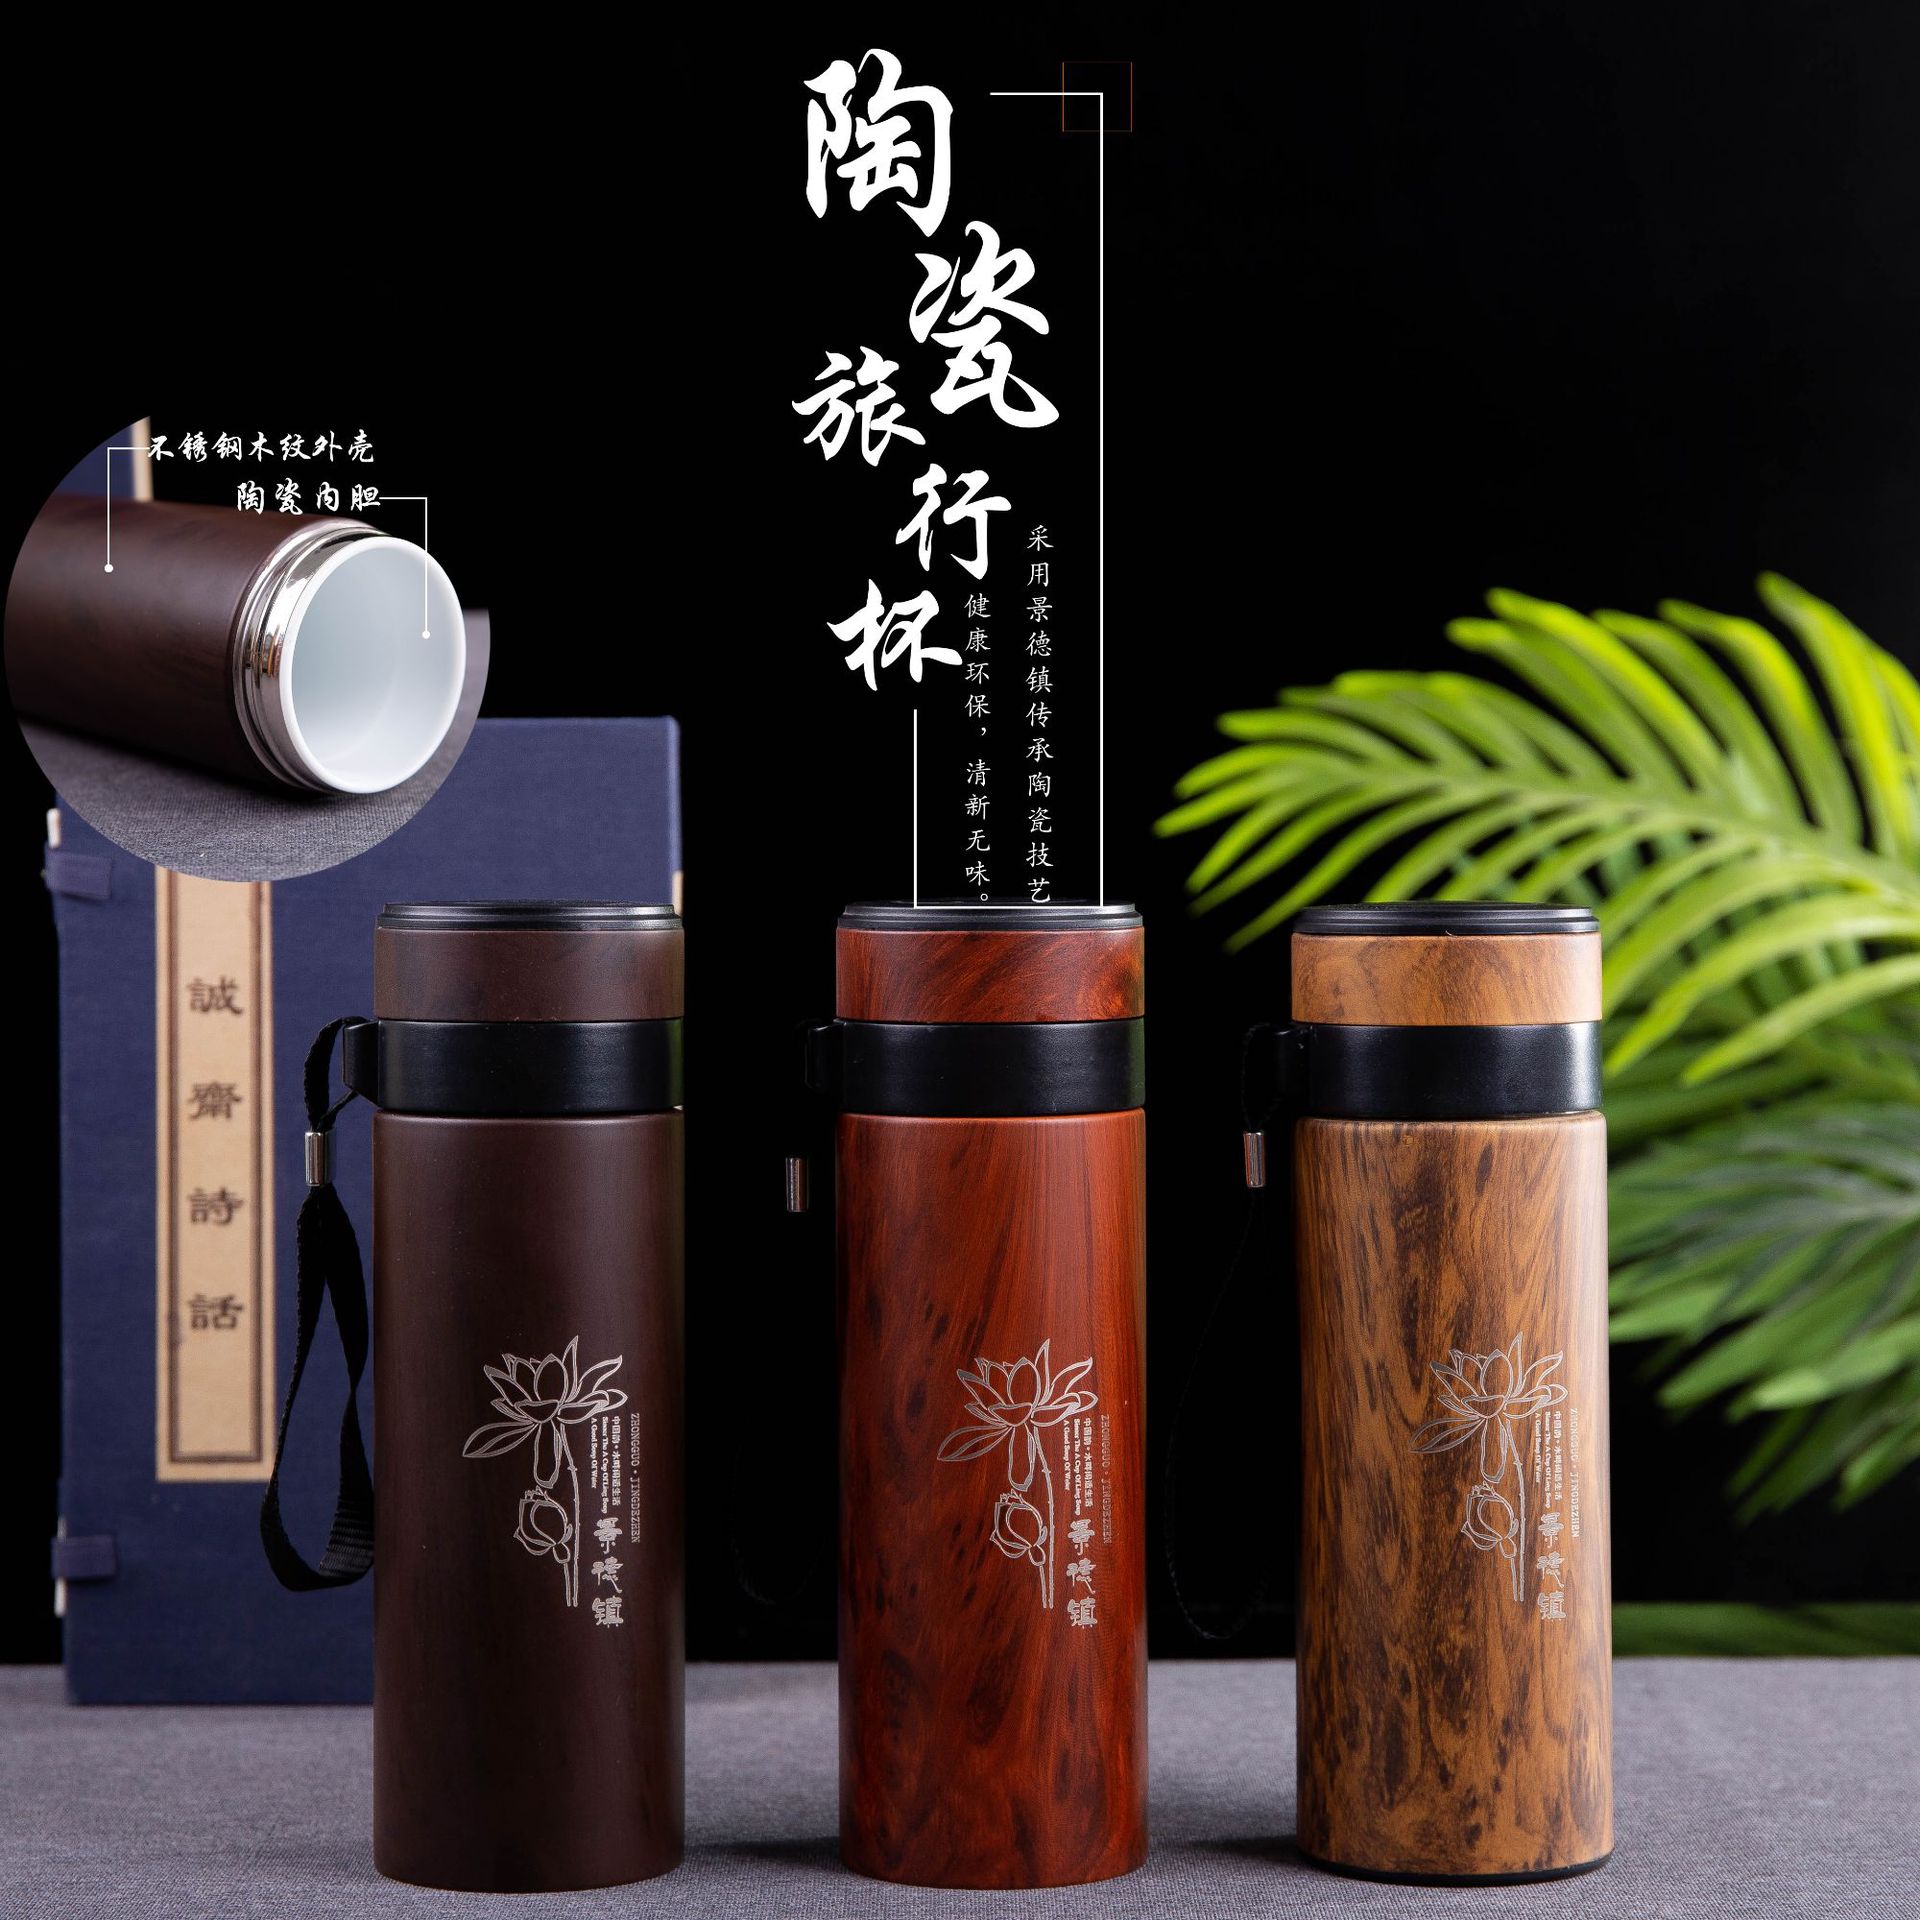 木紋復古保溫杯 商務杯 中式風格 (8.3折)